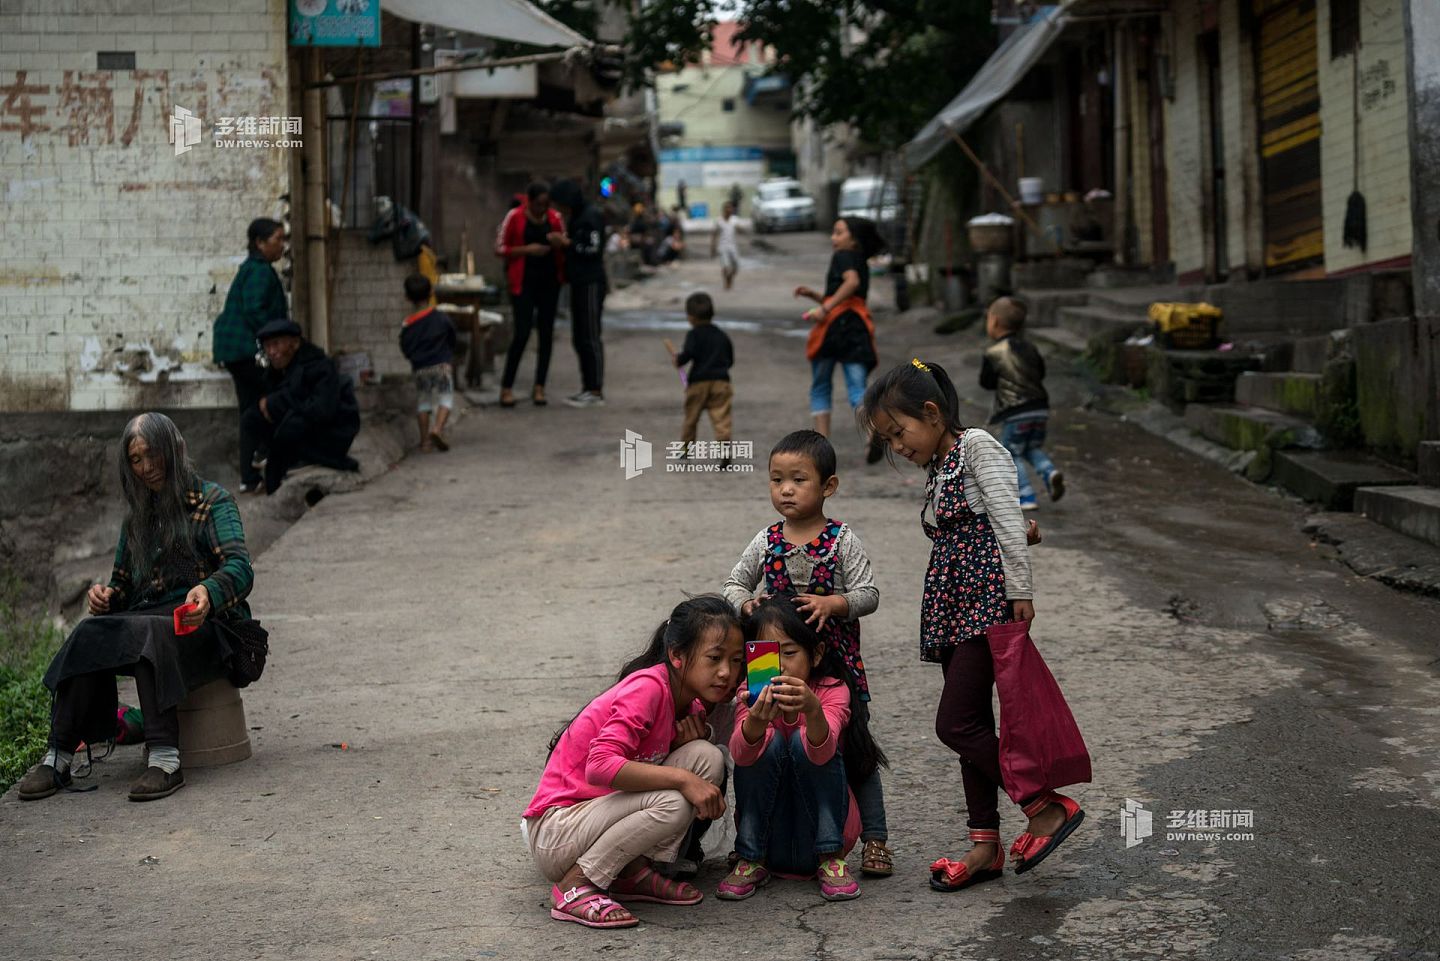 四川西南的大凉山是中国最大的彝族聚居区，也是中国贫困县最为集中的地区之一。这里被称为中国贫穷的样本，恶劣的自然环境和长期的贫困困扰着这里。 图为当地彝族小孩。（多维新闻）